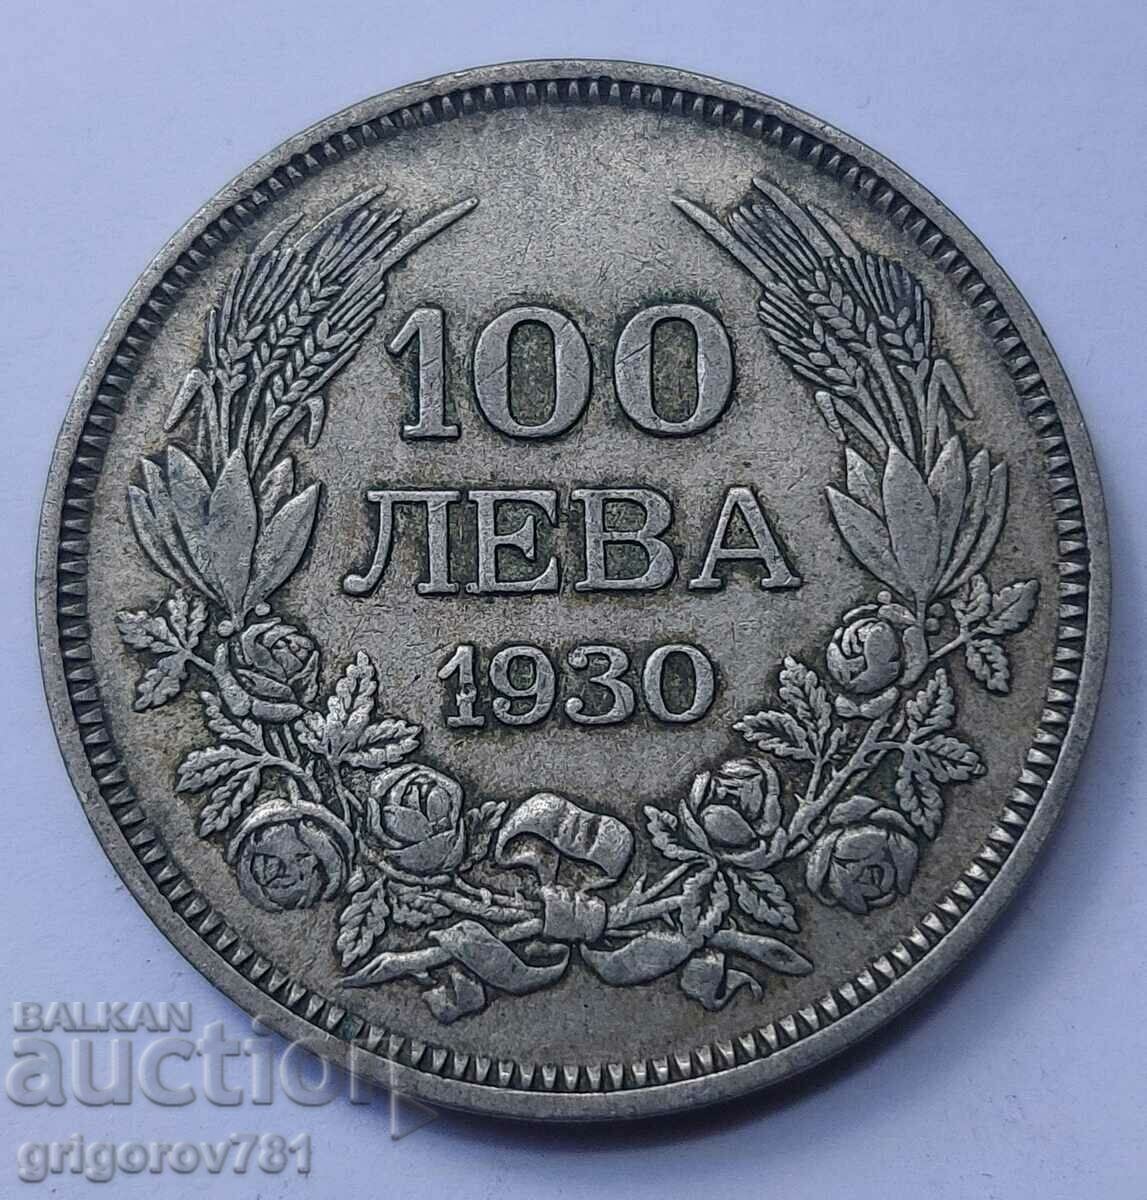 100 leva silver Bulgaria 1930 - silver coin #47